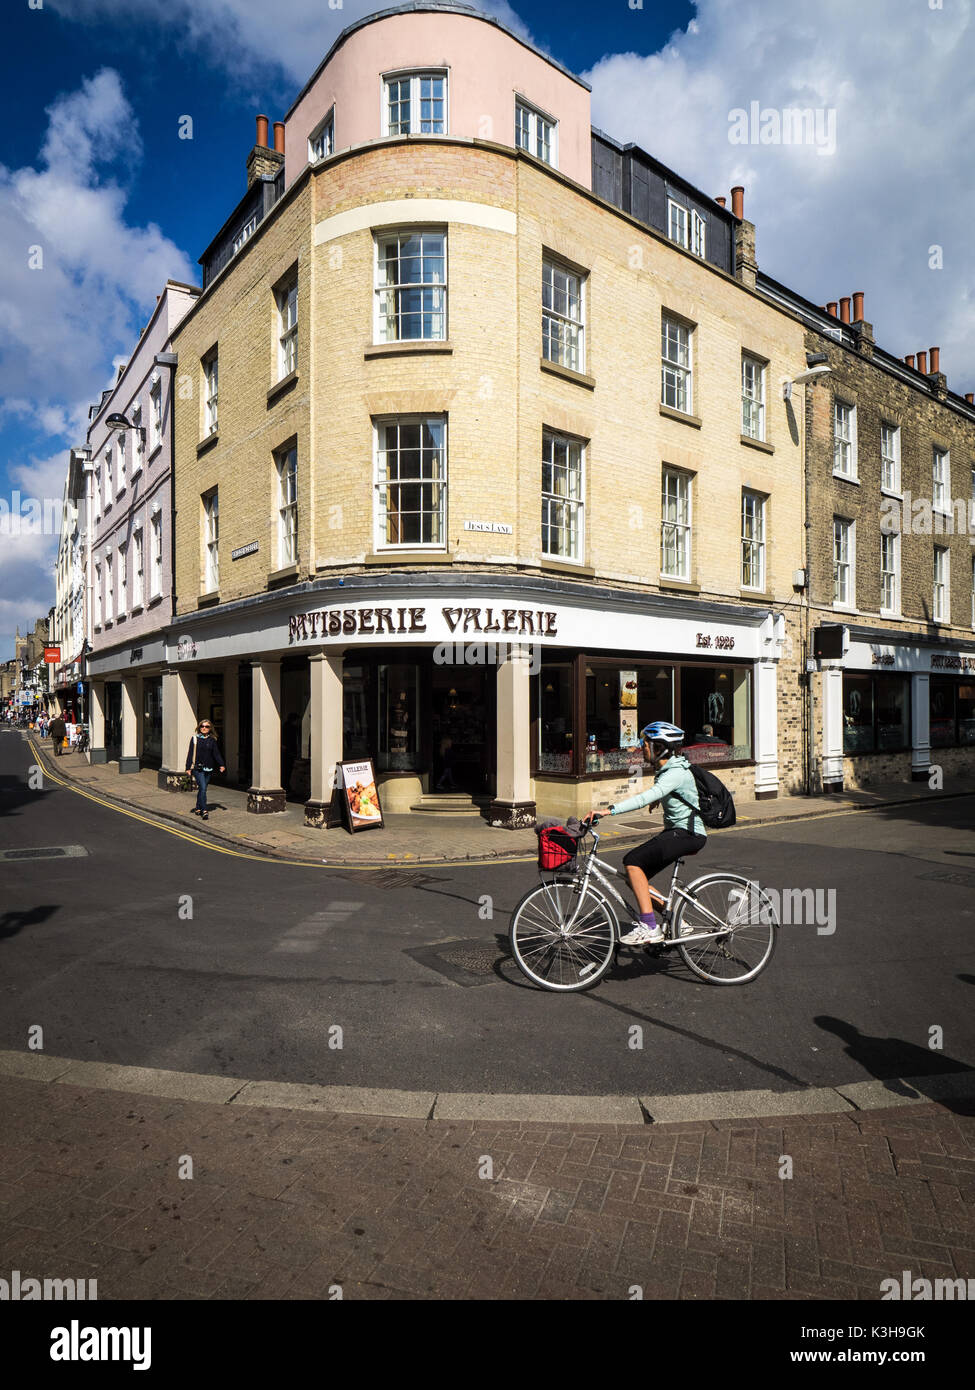 Cambridge Shopping - ein Radfahrer übergibt Patisserie Valerie an der Ecke einer Reihe von Geschäften in der Bridge Street, central Cambridge Großbritannien Stockfoto